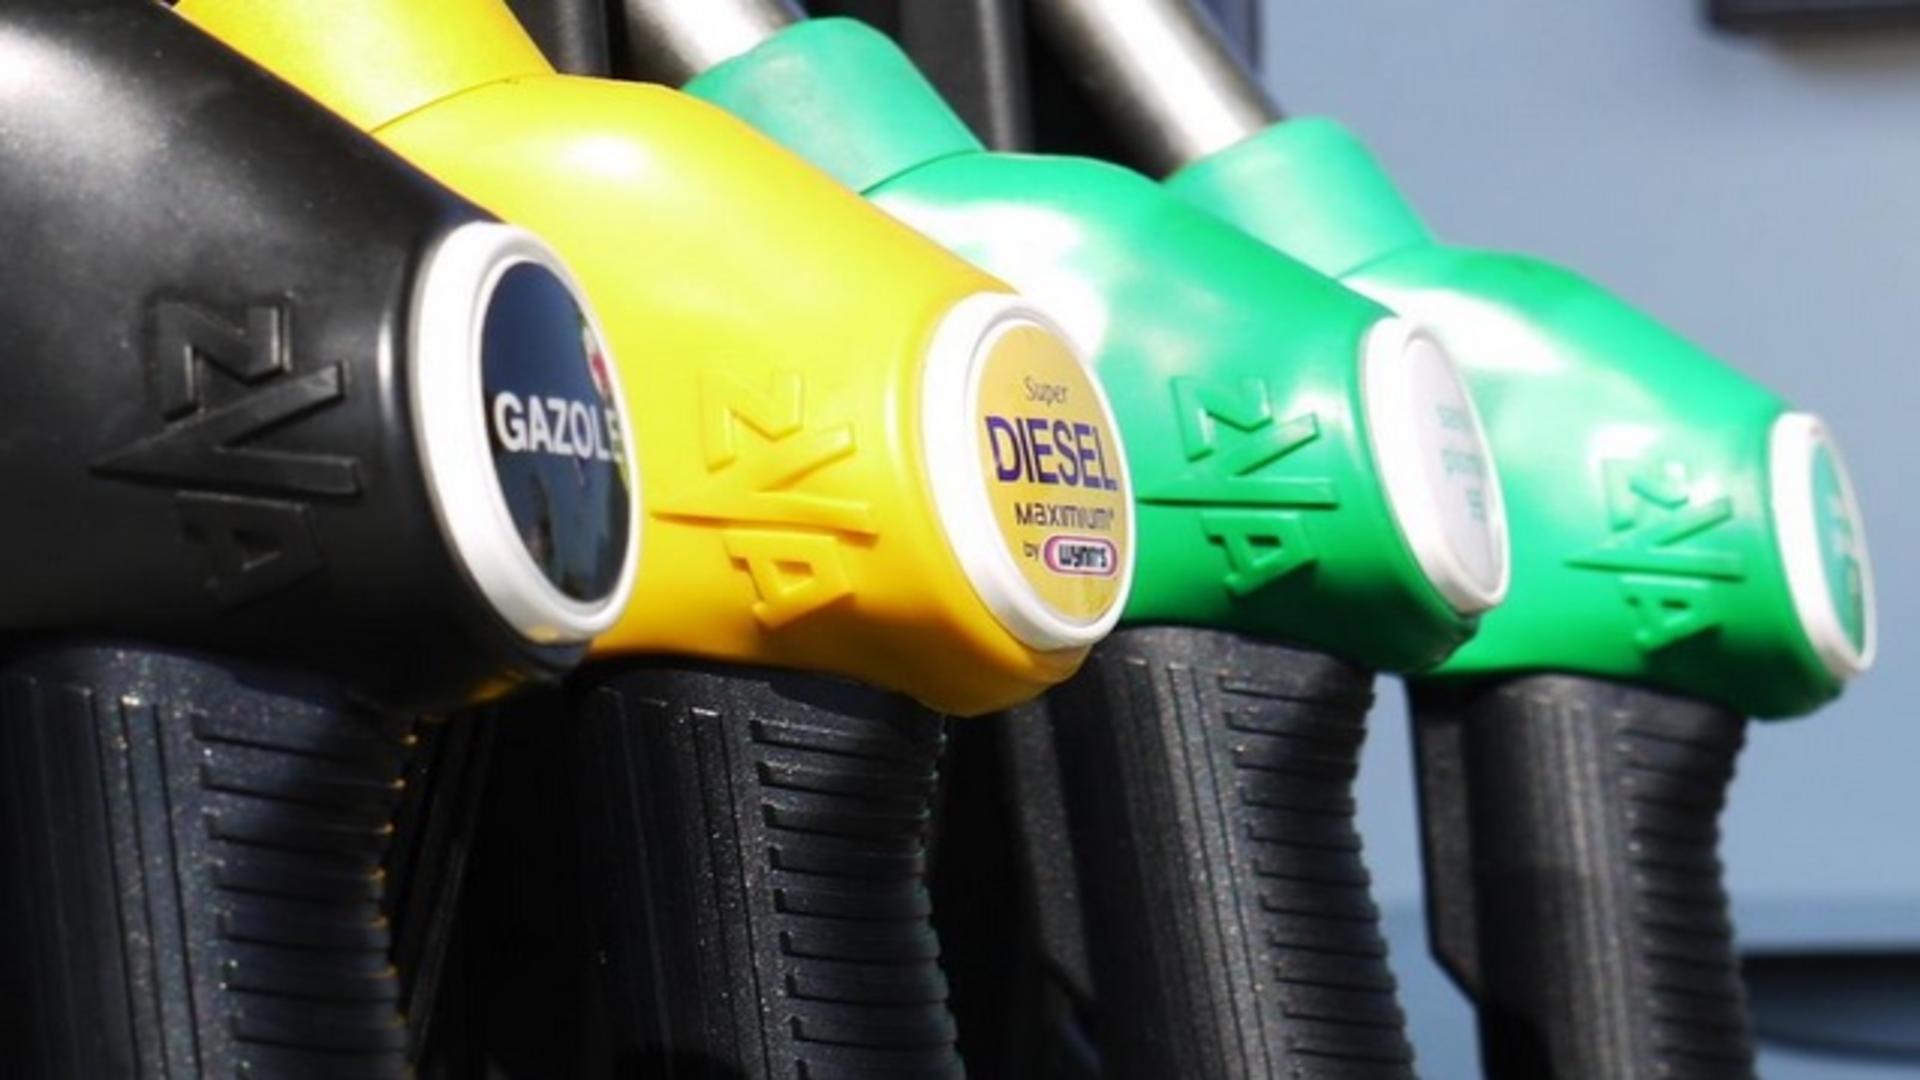 Vești proaste pentru români: urmează noi scumpiri la carburanți